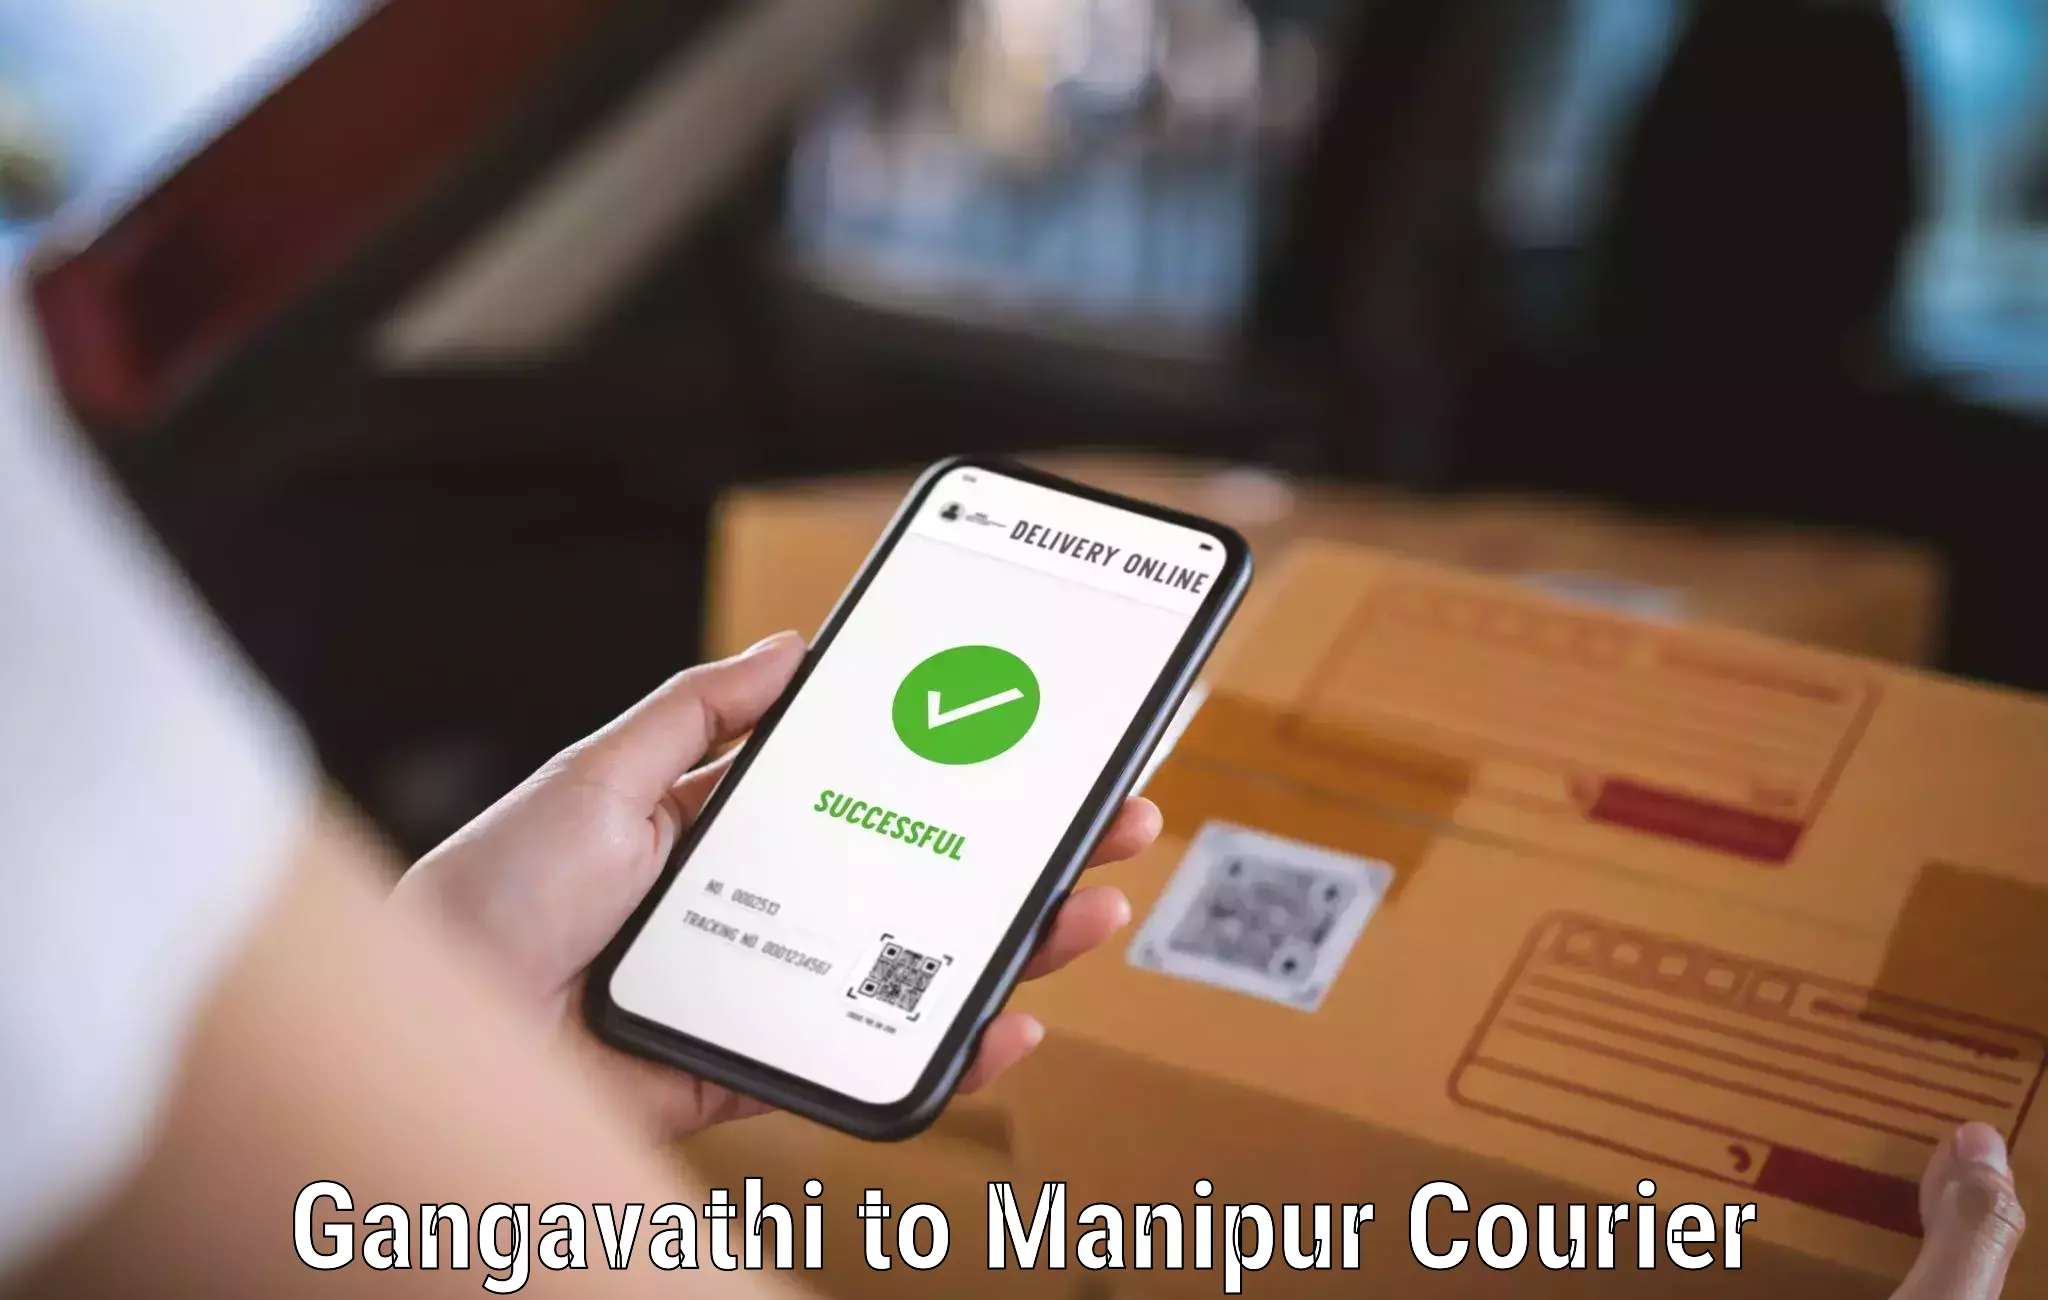 Versatile courier options Gangavathi to Thoubal